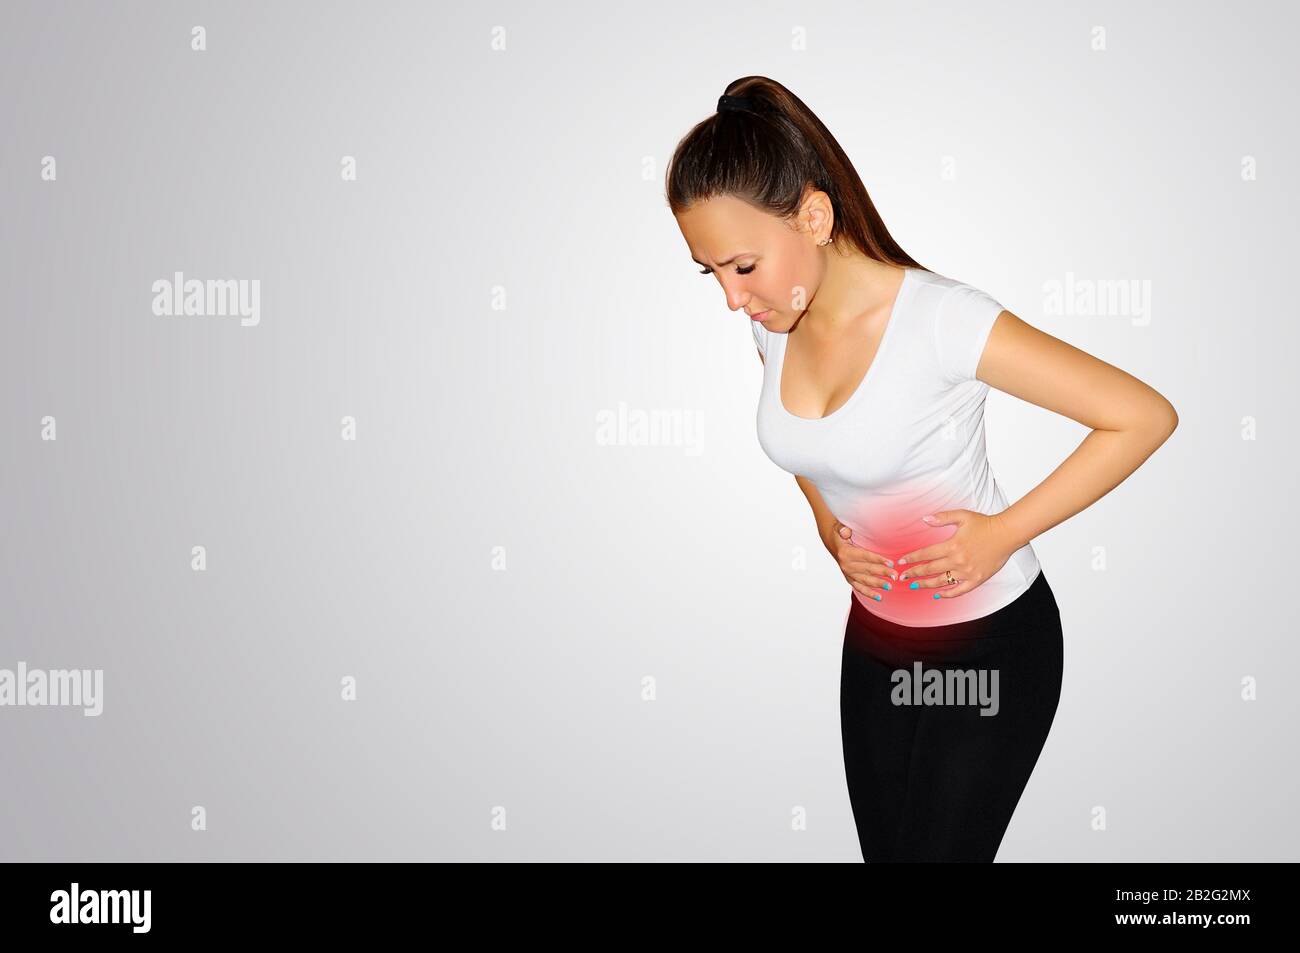 Bauchschmerzen. Eine junge Frau leidet unter Schmerzen im Bauch. Das Problem der Verdauung. Das Problem der Gesundheit der Frauen, das Konzept der Menstruation Stockfoto